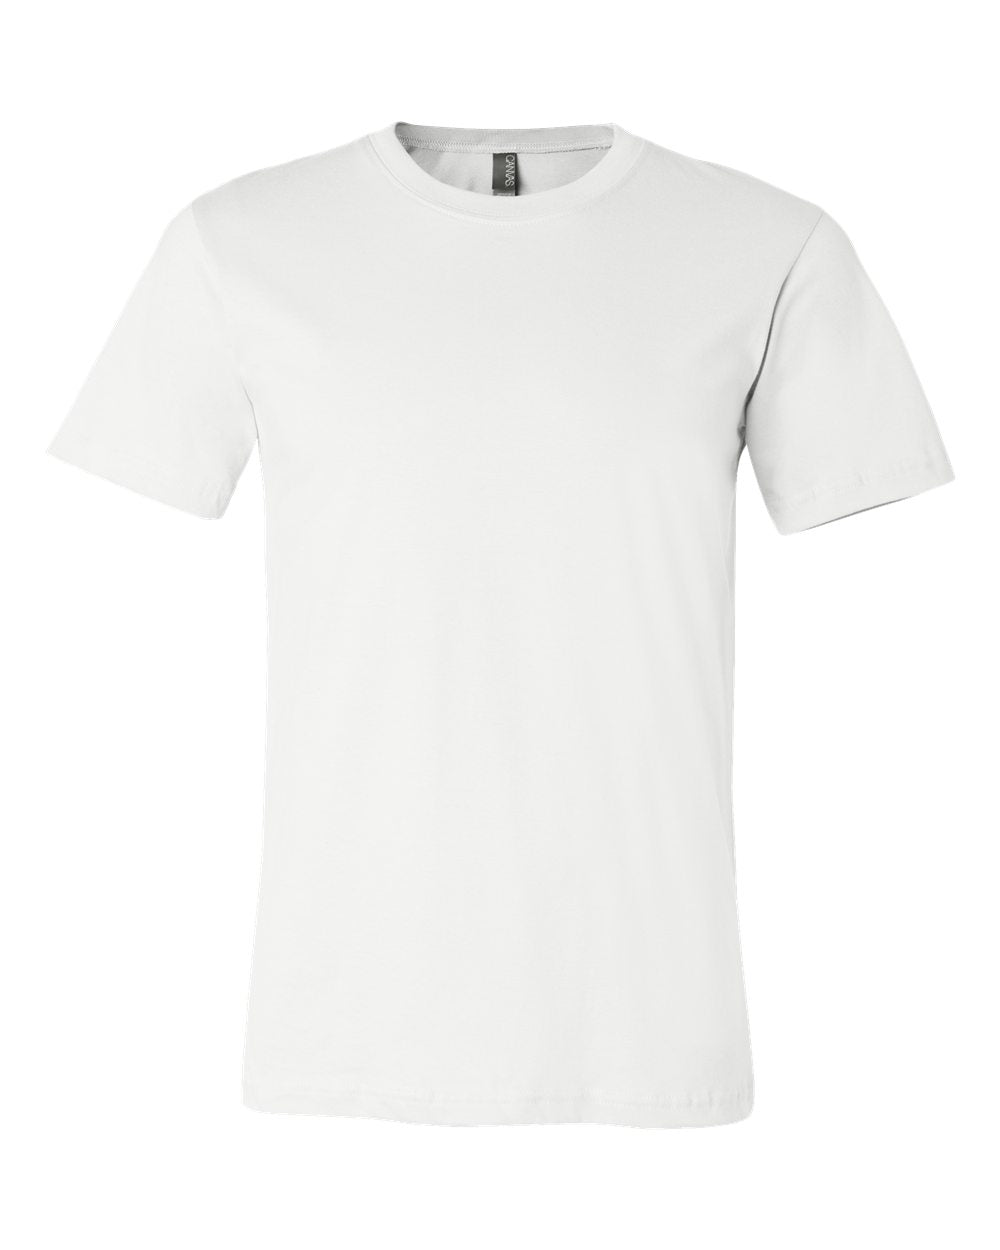 Lounsberry Hollow V T-Shirt